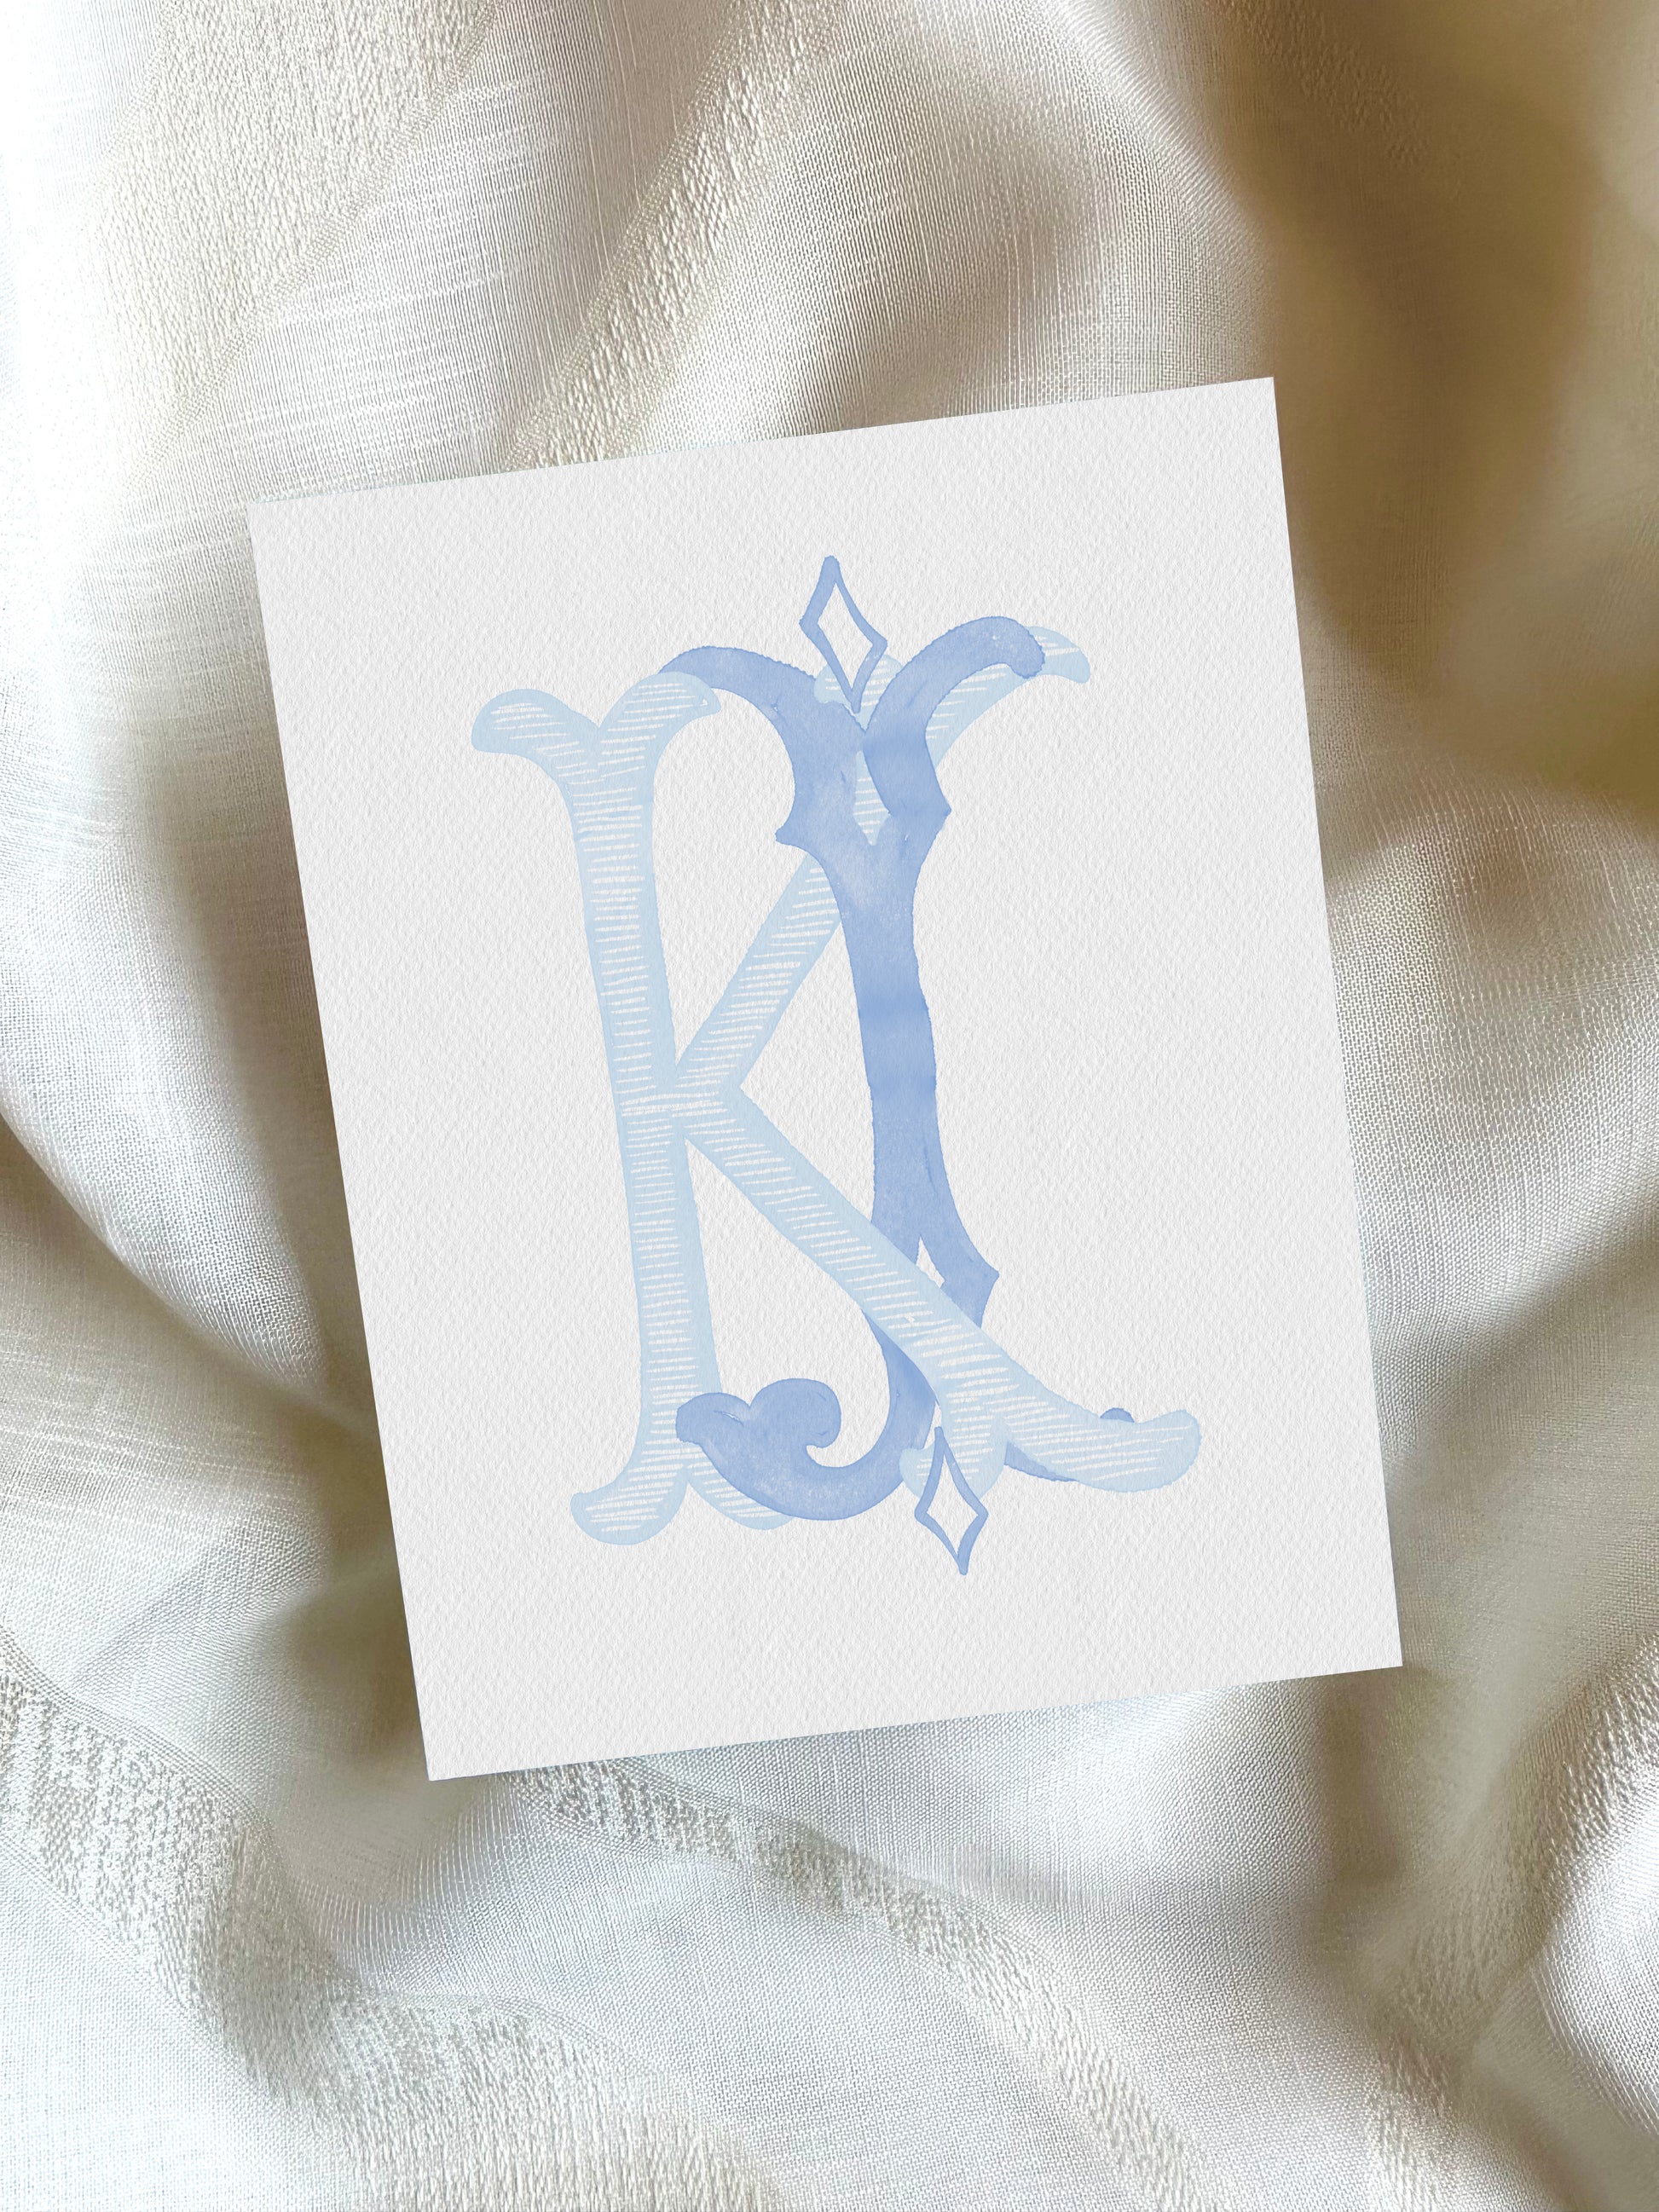 2 Letter Monogram with Letters JK KJ | Digital Download - Wedding Monogram SVG, Personal Logo, Wedding Logo for Wedding Invitations The Wedding Crest Lab